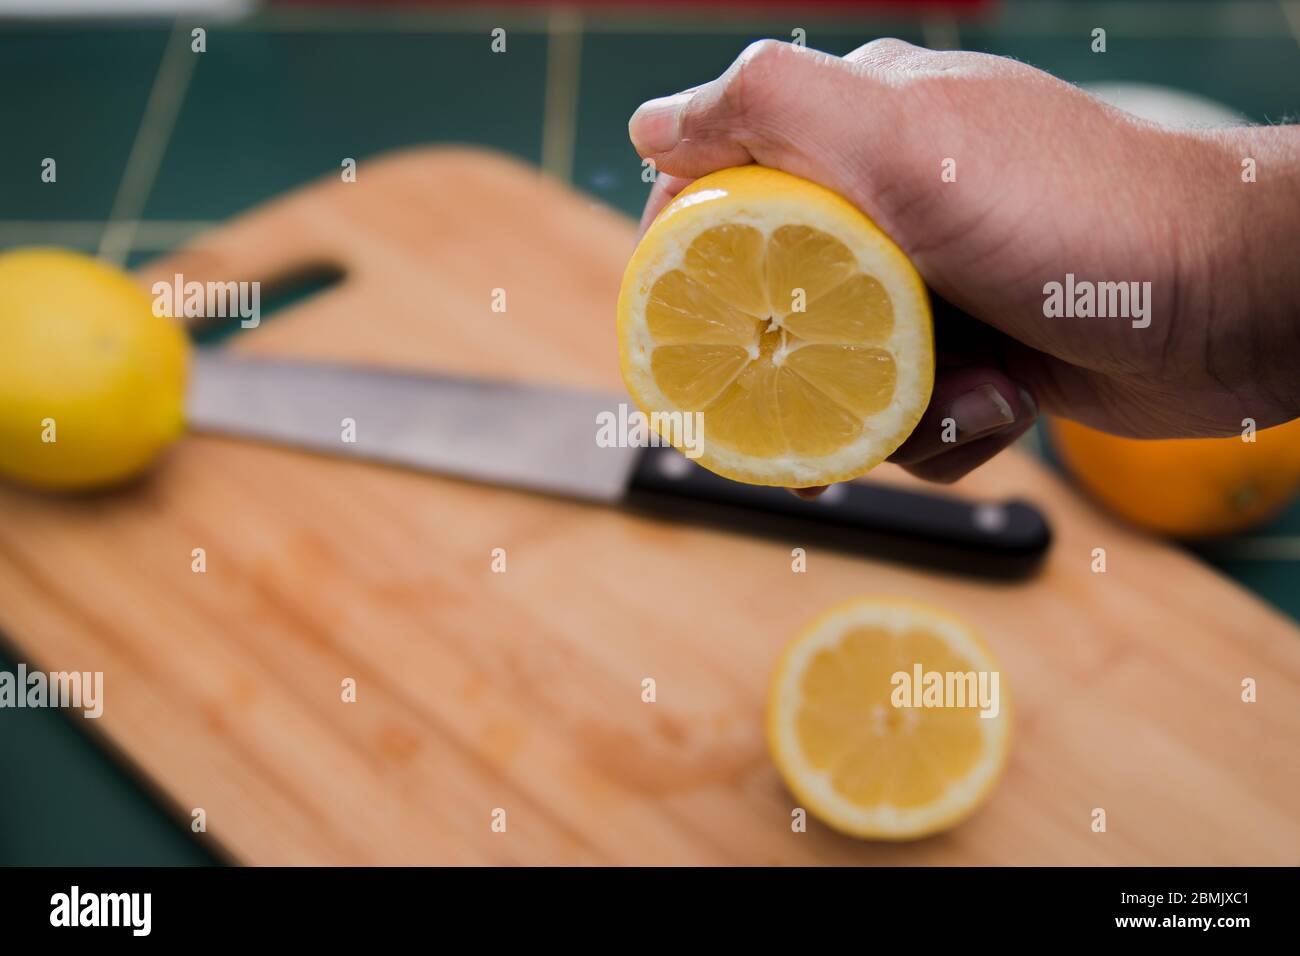 Limone appena tagliato che sta per essere spremuto con una mano dell'uomo Foto Stock